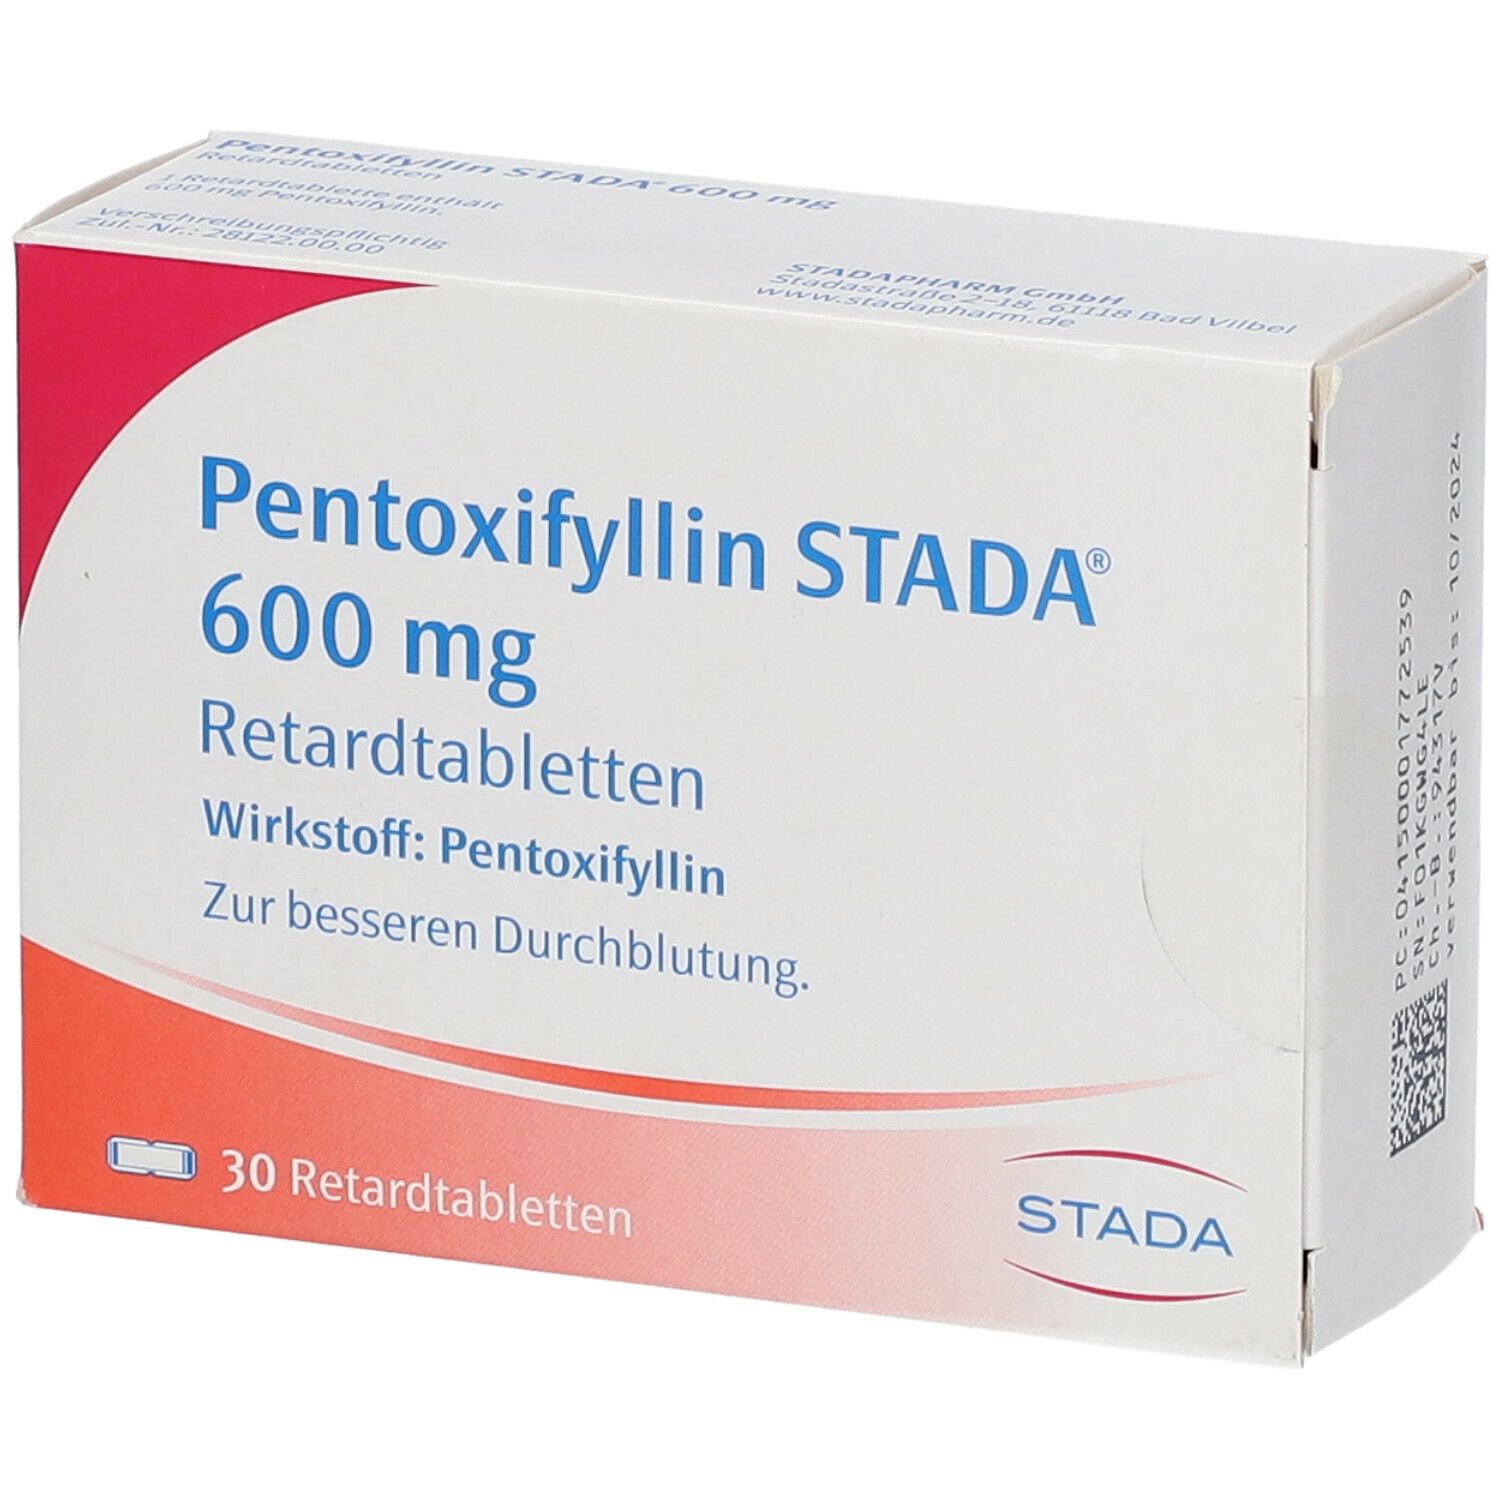 Pentoxifyllin STADA® 600 mg Retardtabletten